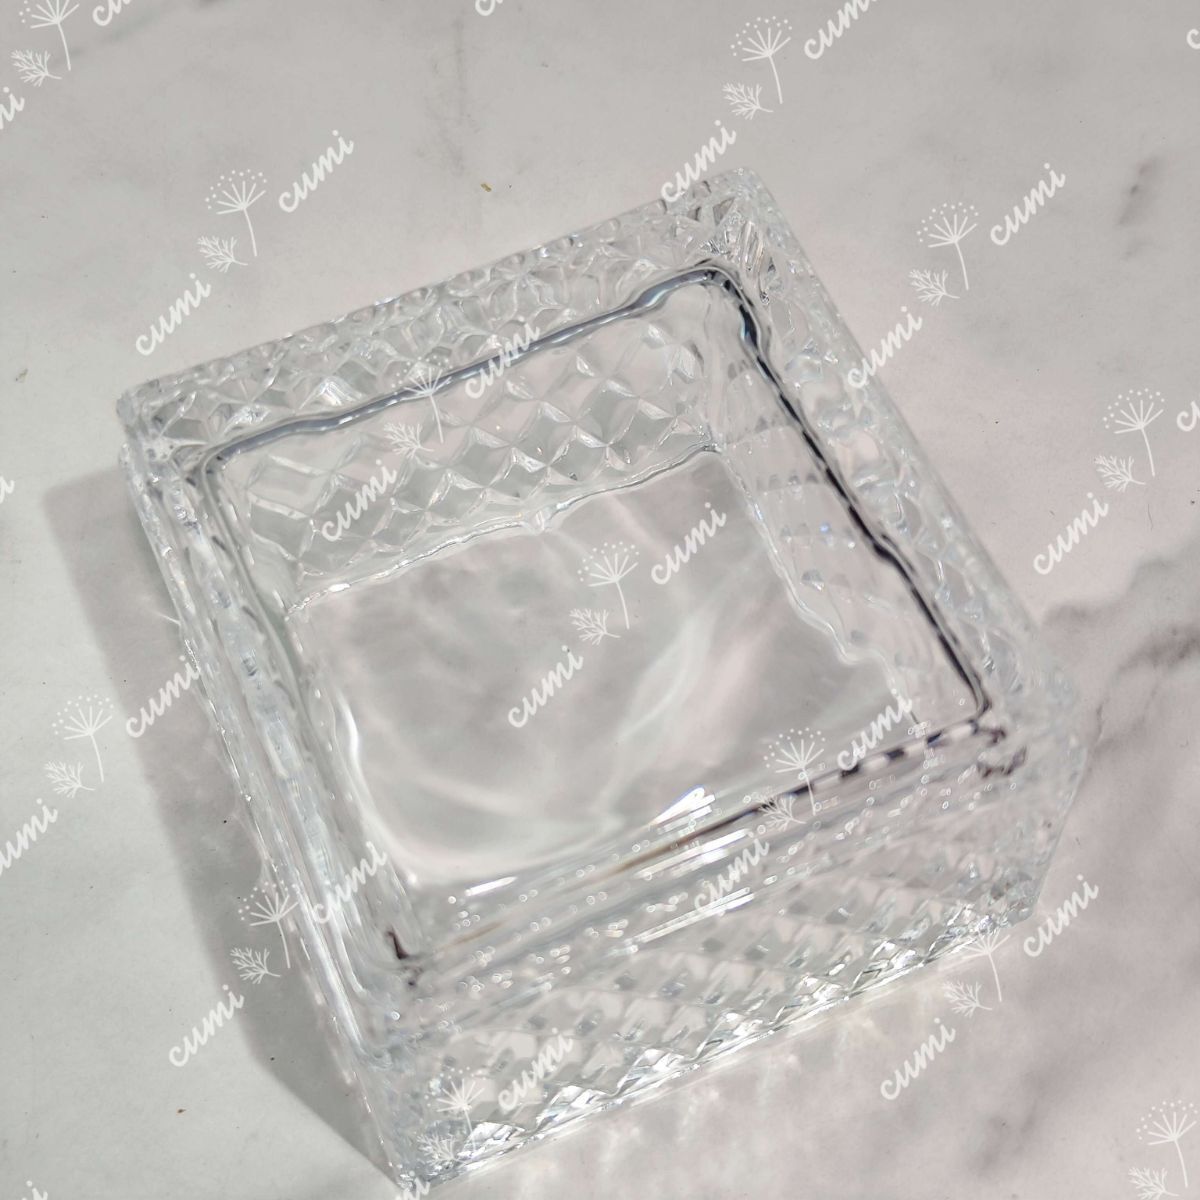 小物入れ 蓋付き エレガント 瑠璃 ガラス製 透明 高級 インテリア プレゼント おすすめ 人気 デザイン 玄関 リビング 記念日 北欧 _画像6